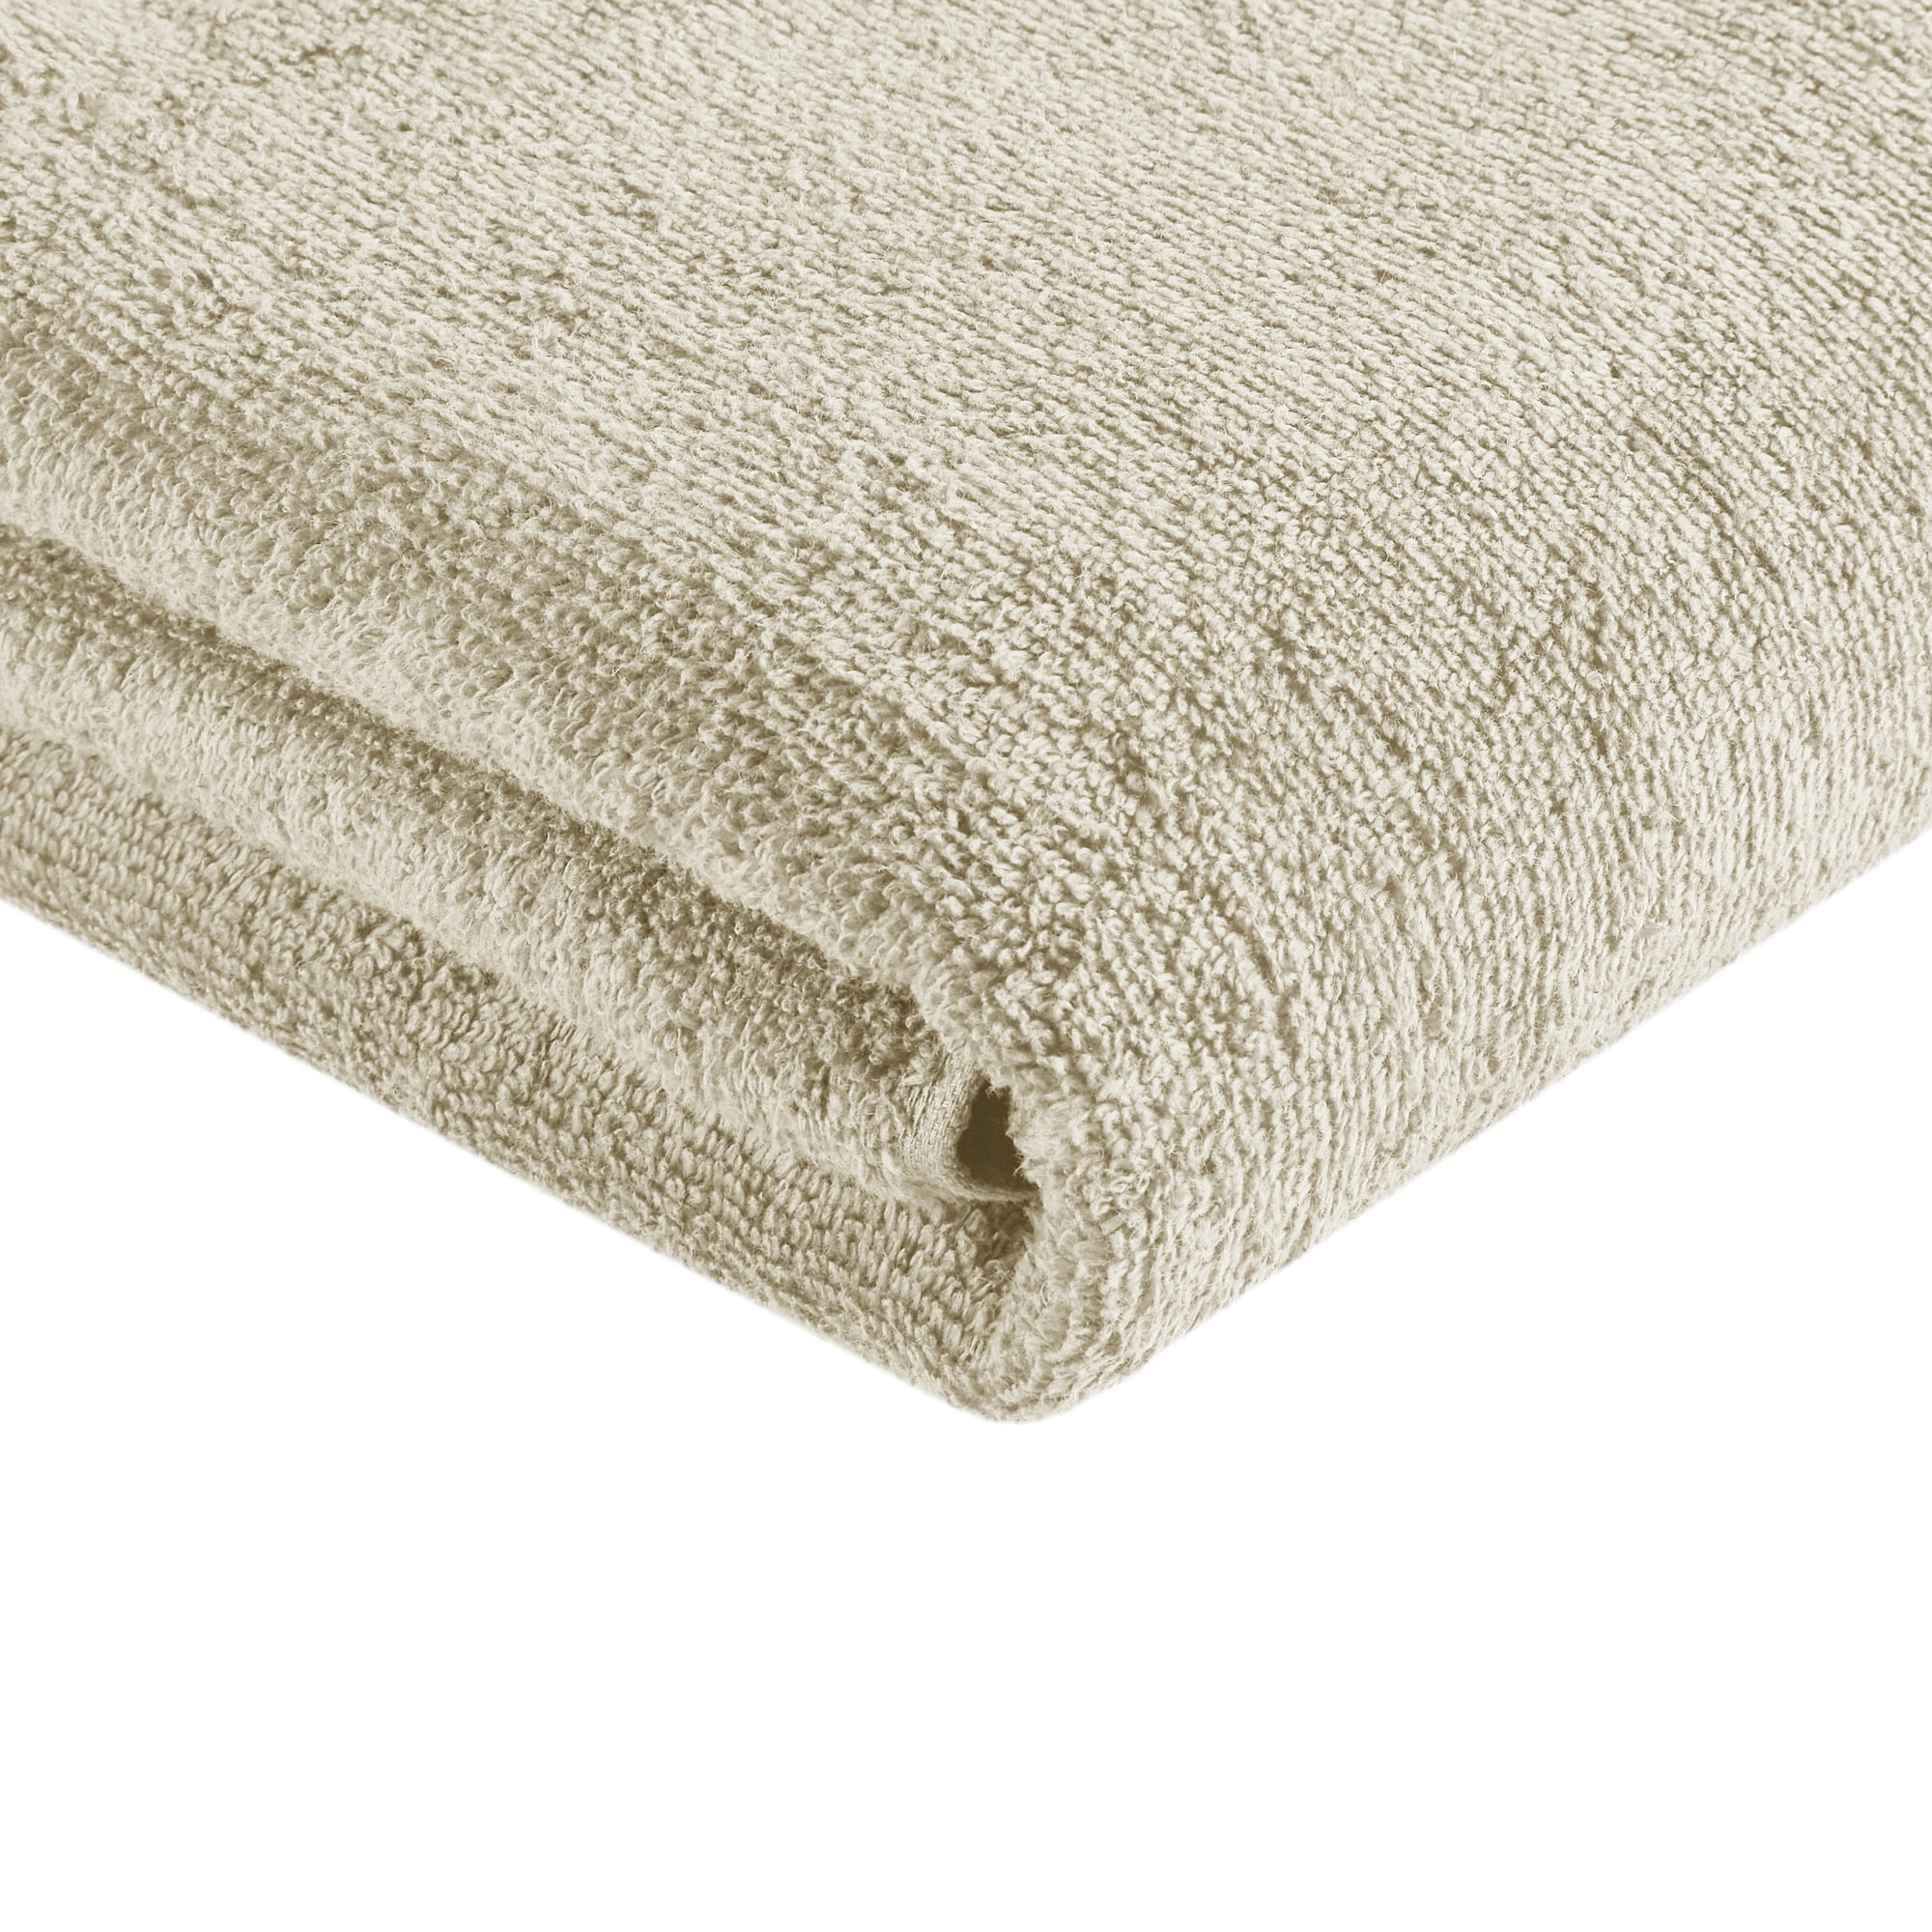 CONTEXT 12-Piece Beige Geometric 100% Cotton washcloth Towel Set